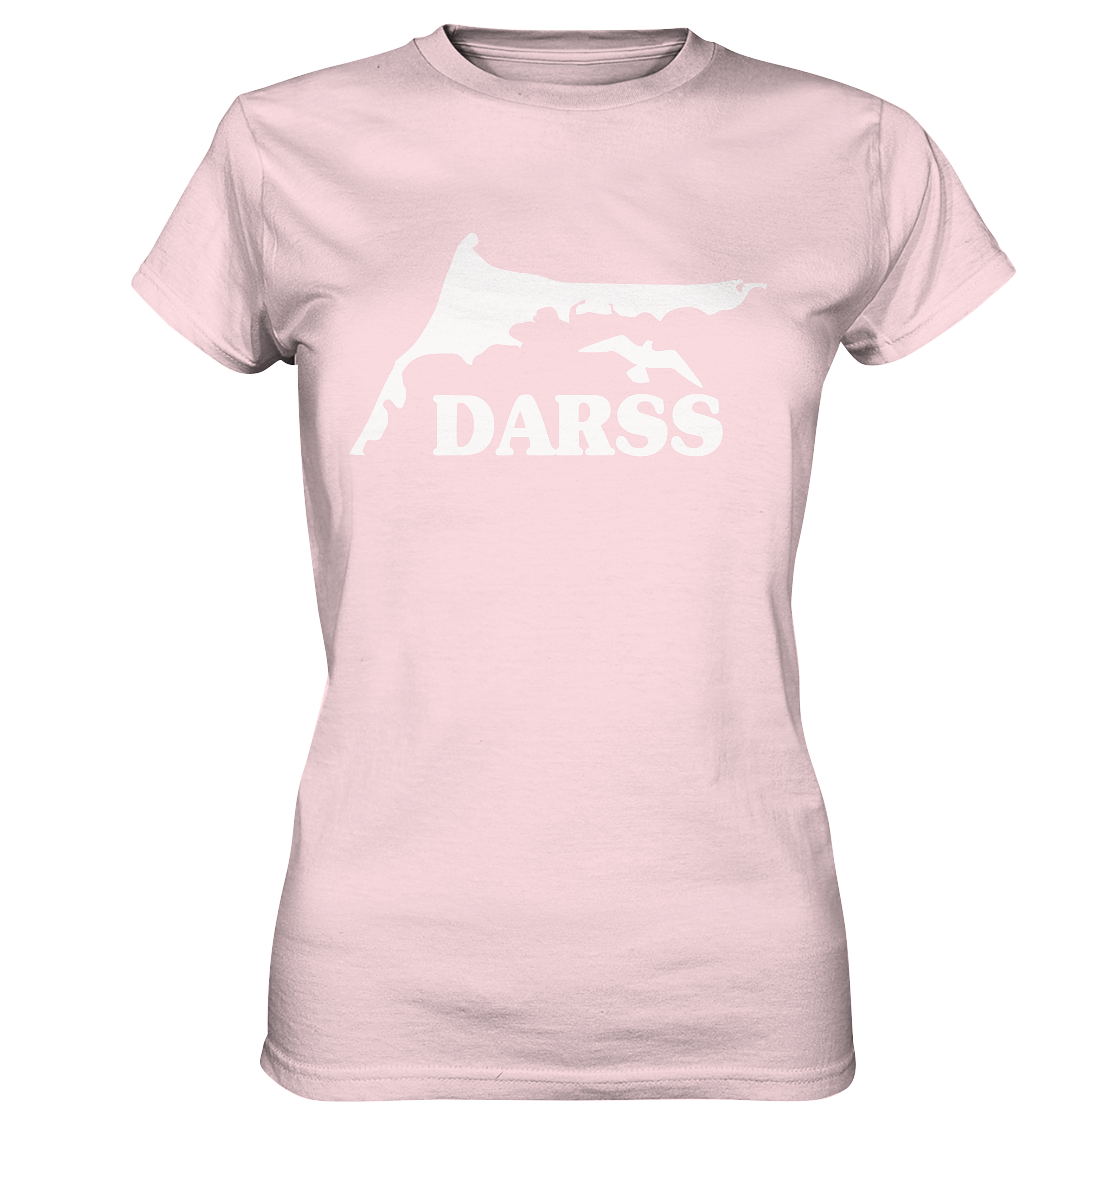 Fischland-Darß-Zingst - Silhouette - Damen Shirt